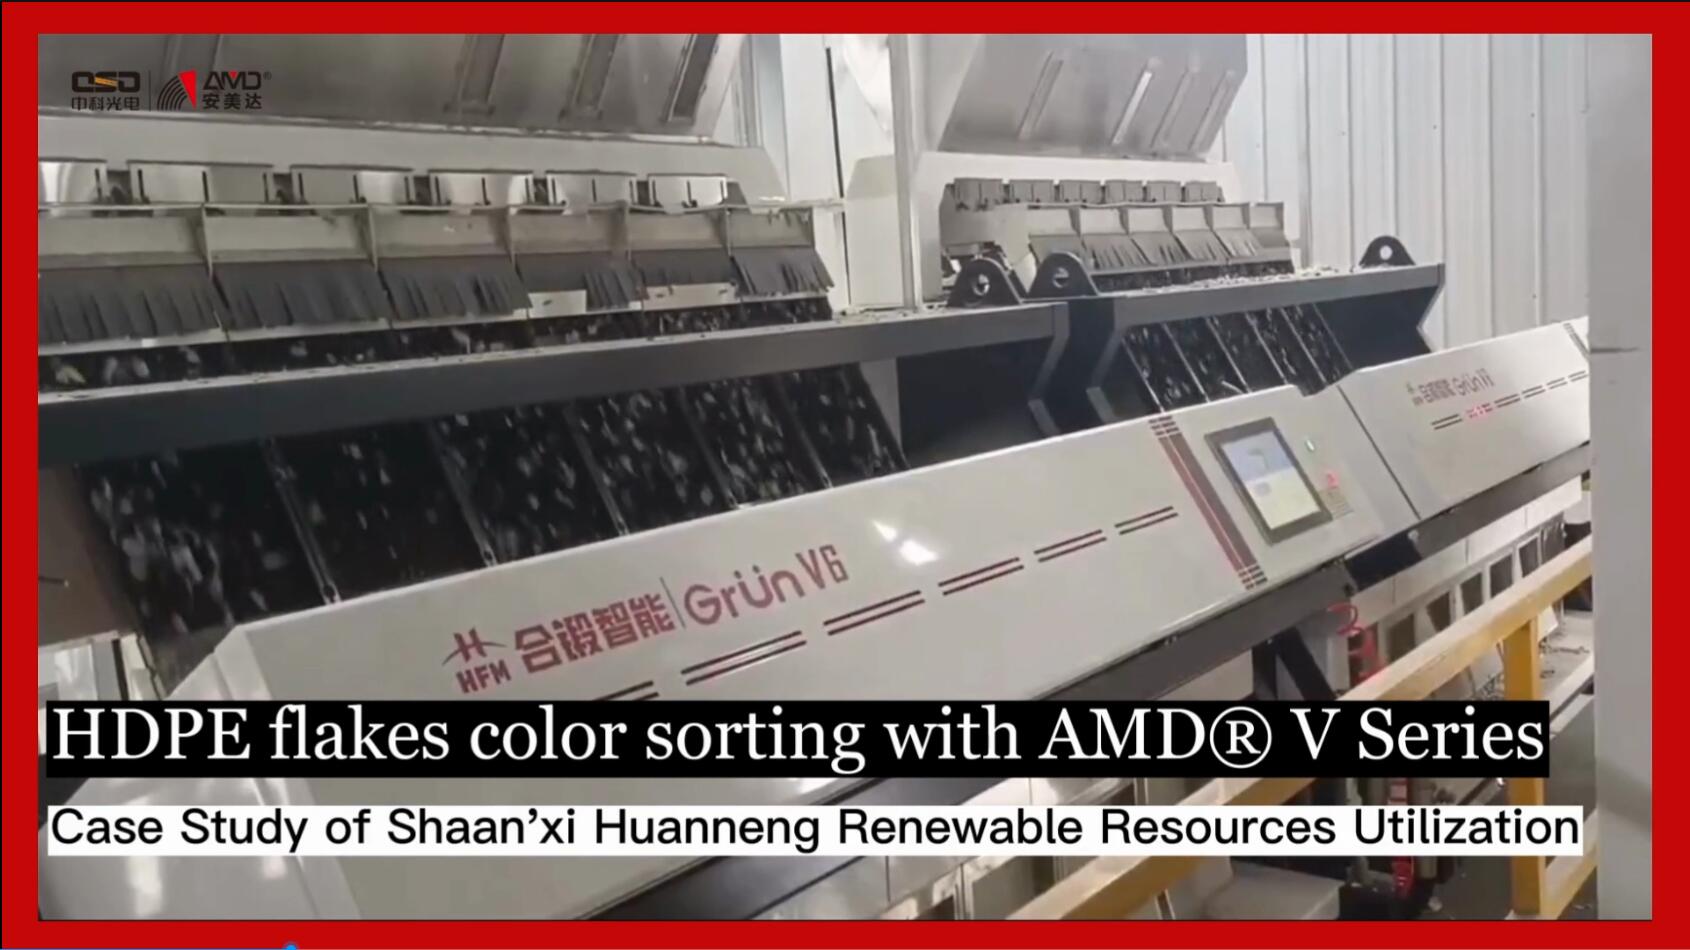 Classificação de cores de flocos de HDPE com AMD® V Series Separator
